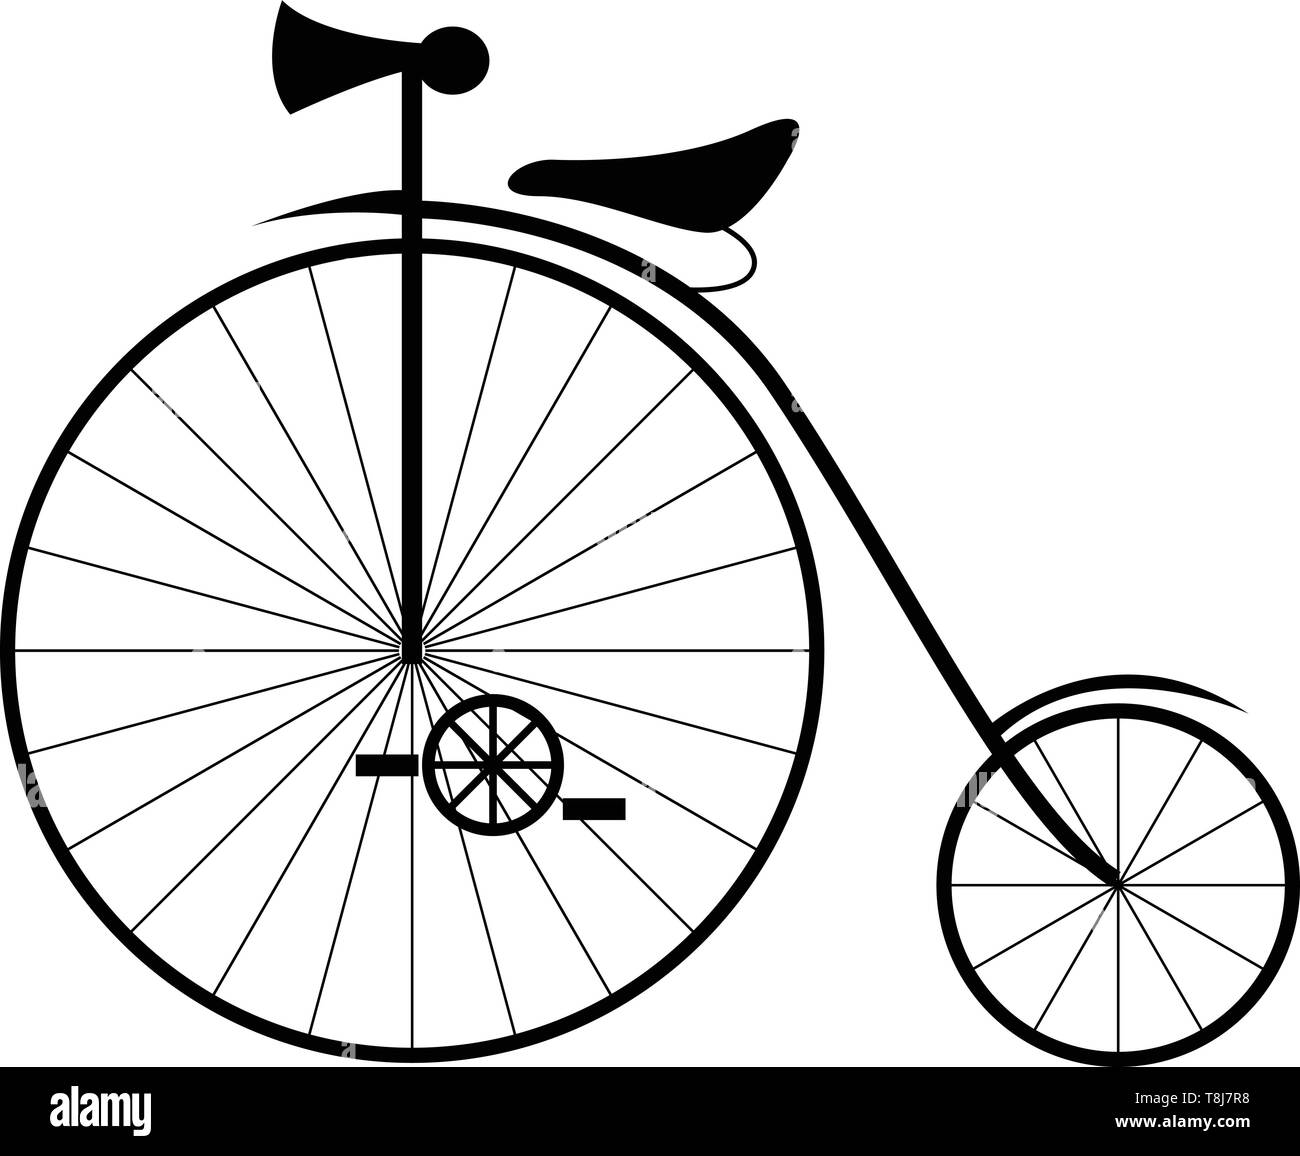 Eine einzigartige Fahrrad mit großen und kleinen Reifen führt uns zurück in die Antike - alte Tage perfekte Geschenk Eltern oder Großeltern auf ihren Geburtstag, Vector, Stock Vektor